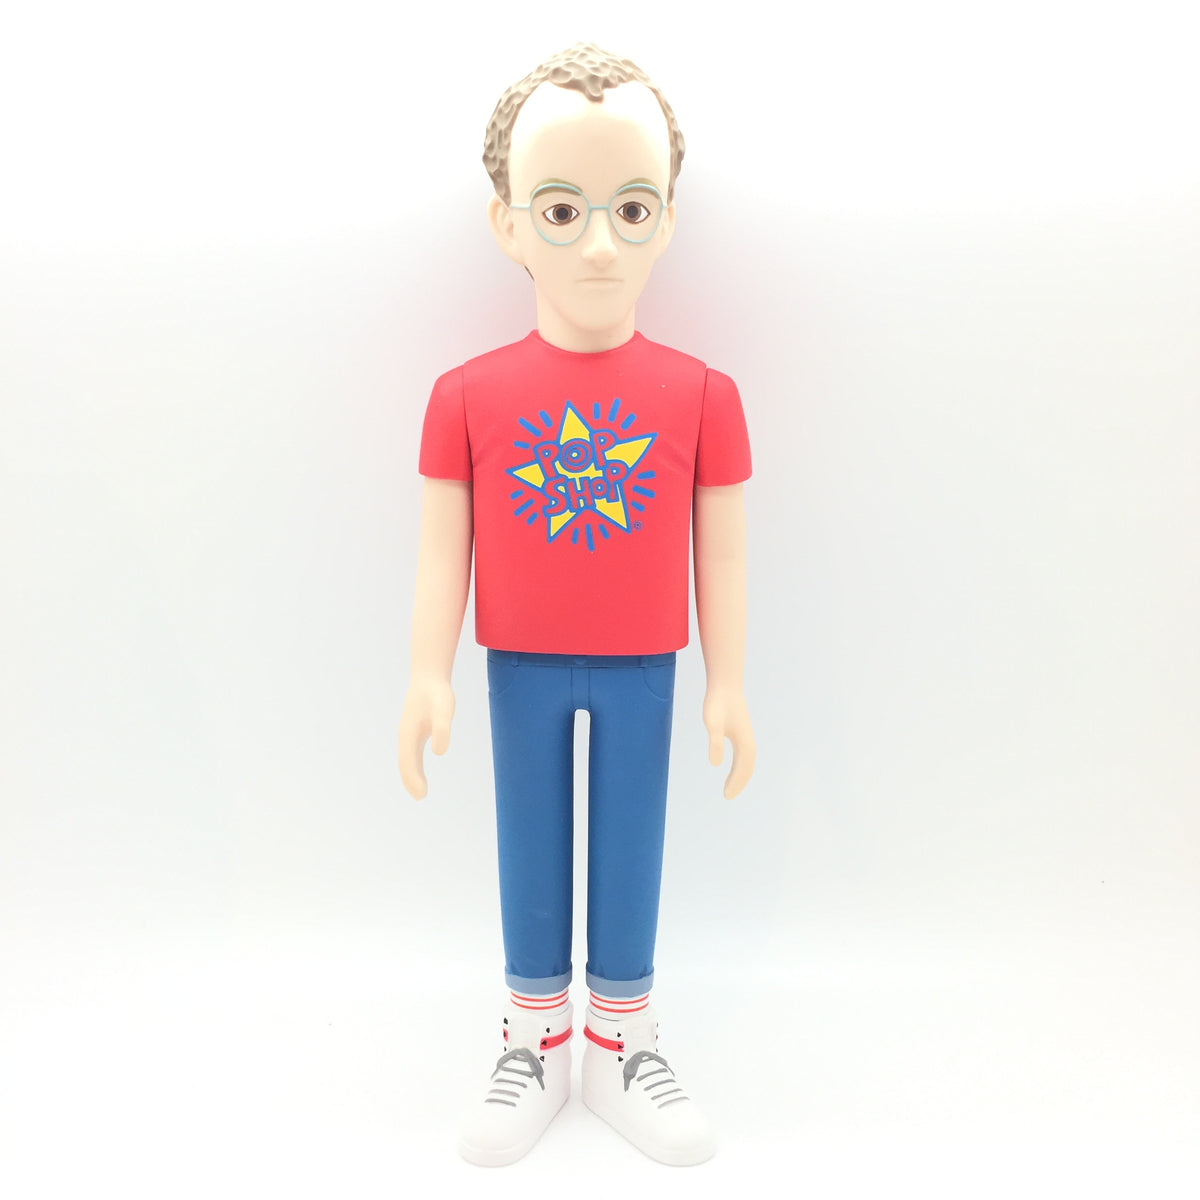 Keith Haring Designer Con Pop Shop Edition Vinyl Collectible Doll by Medicom Toy